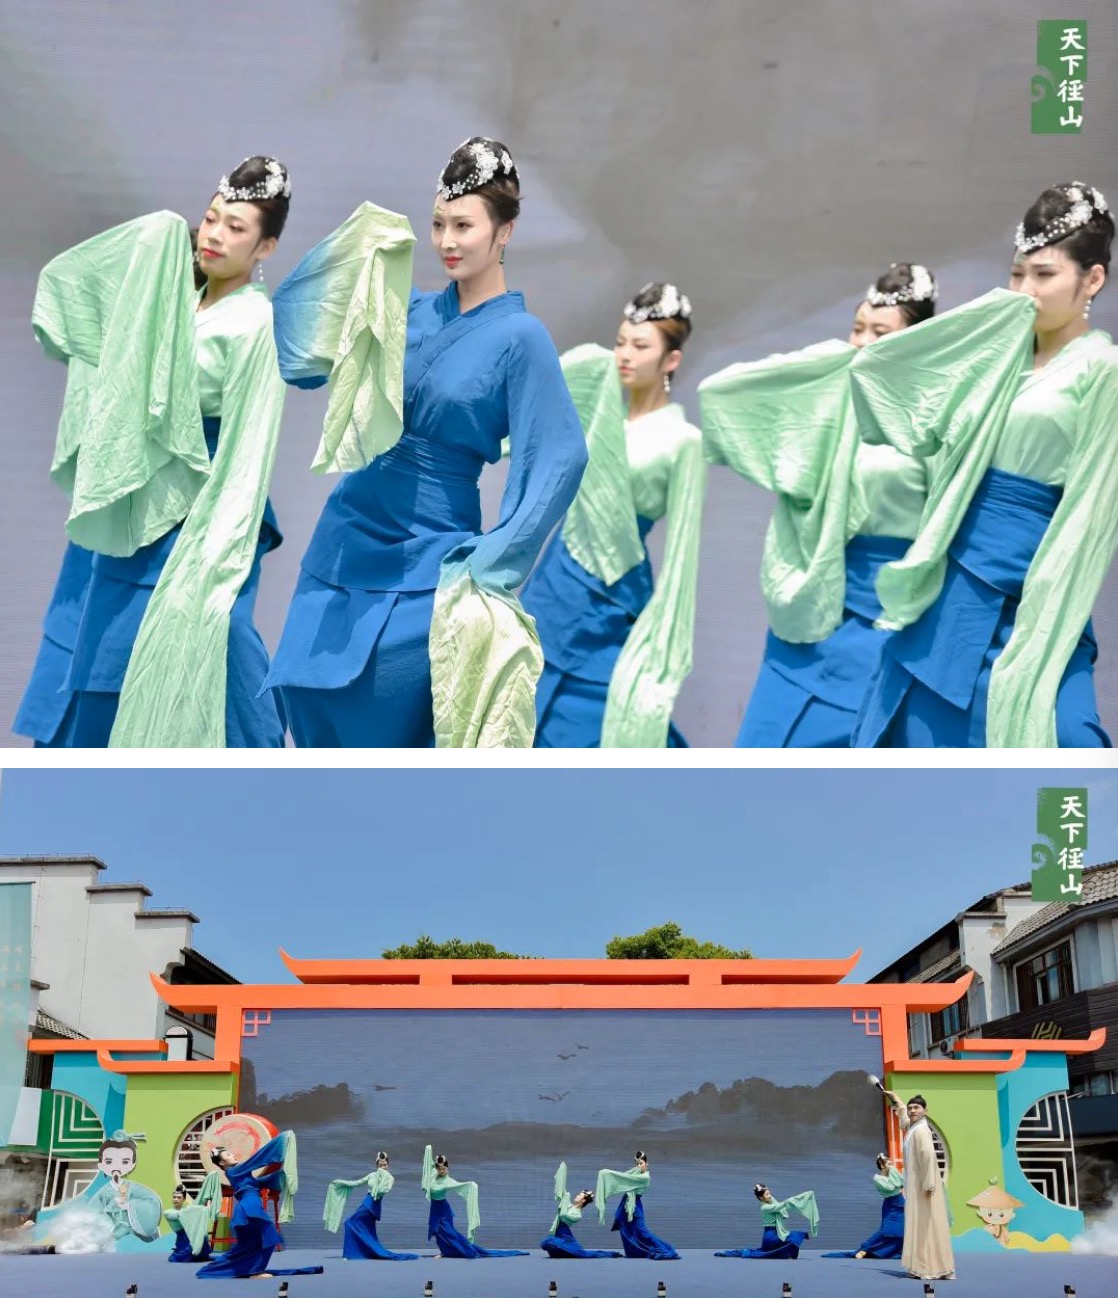 浙江少儿频道公众号发表《双香径》相关文字和演出现场图片